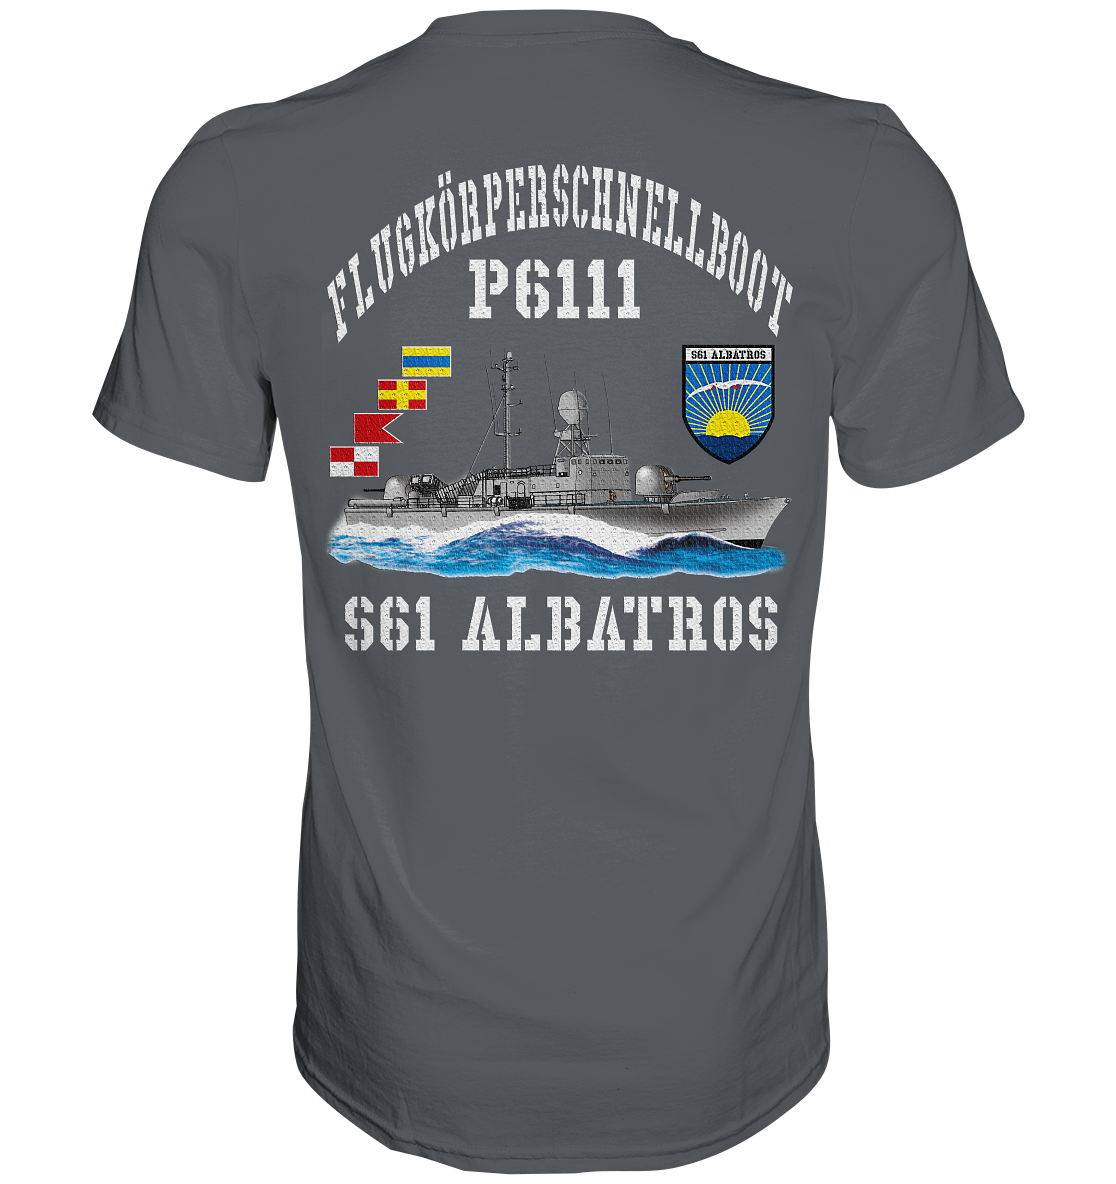 Flugkörperschnellboot P6111 ALBATROS  - Premium Shirt